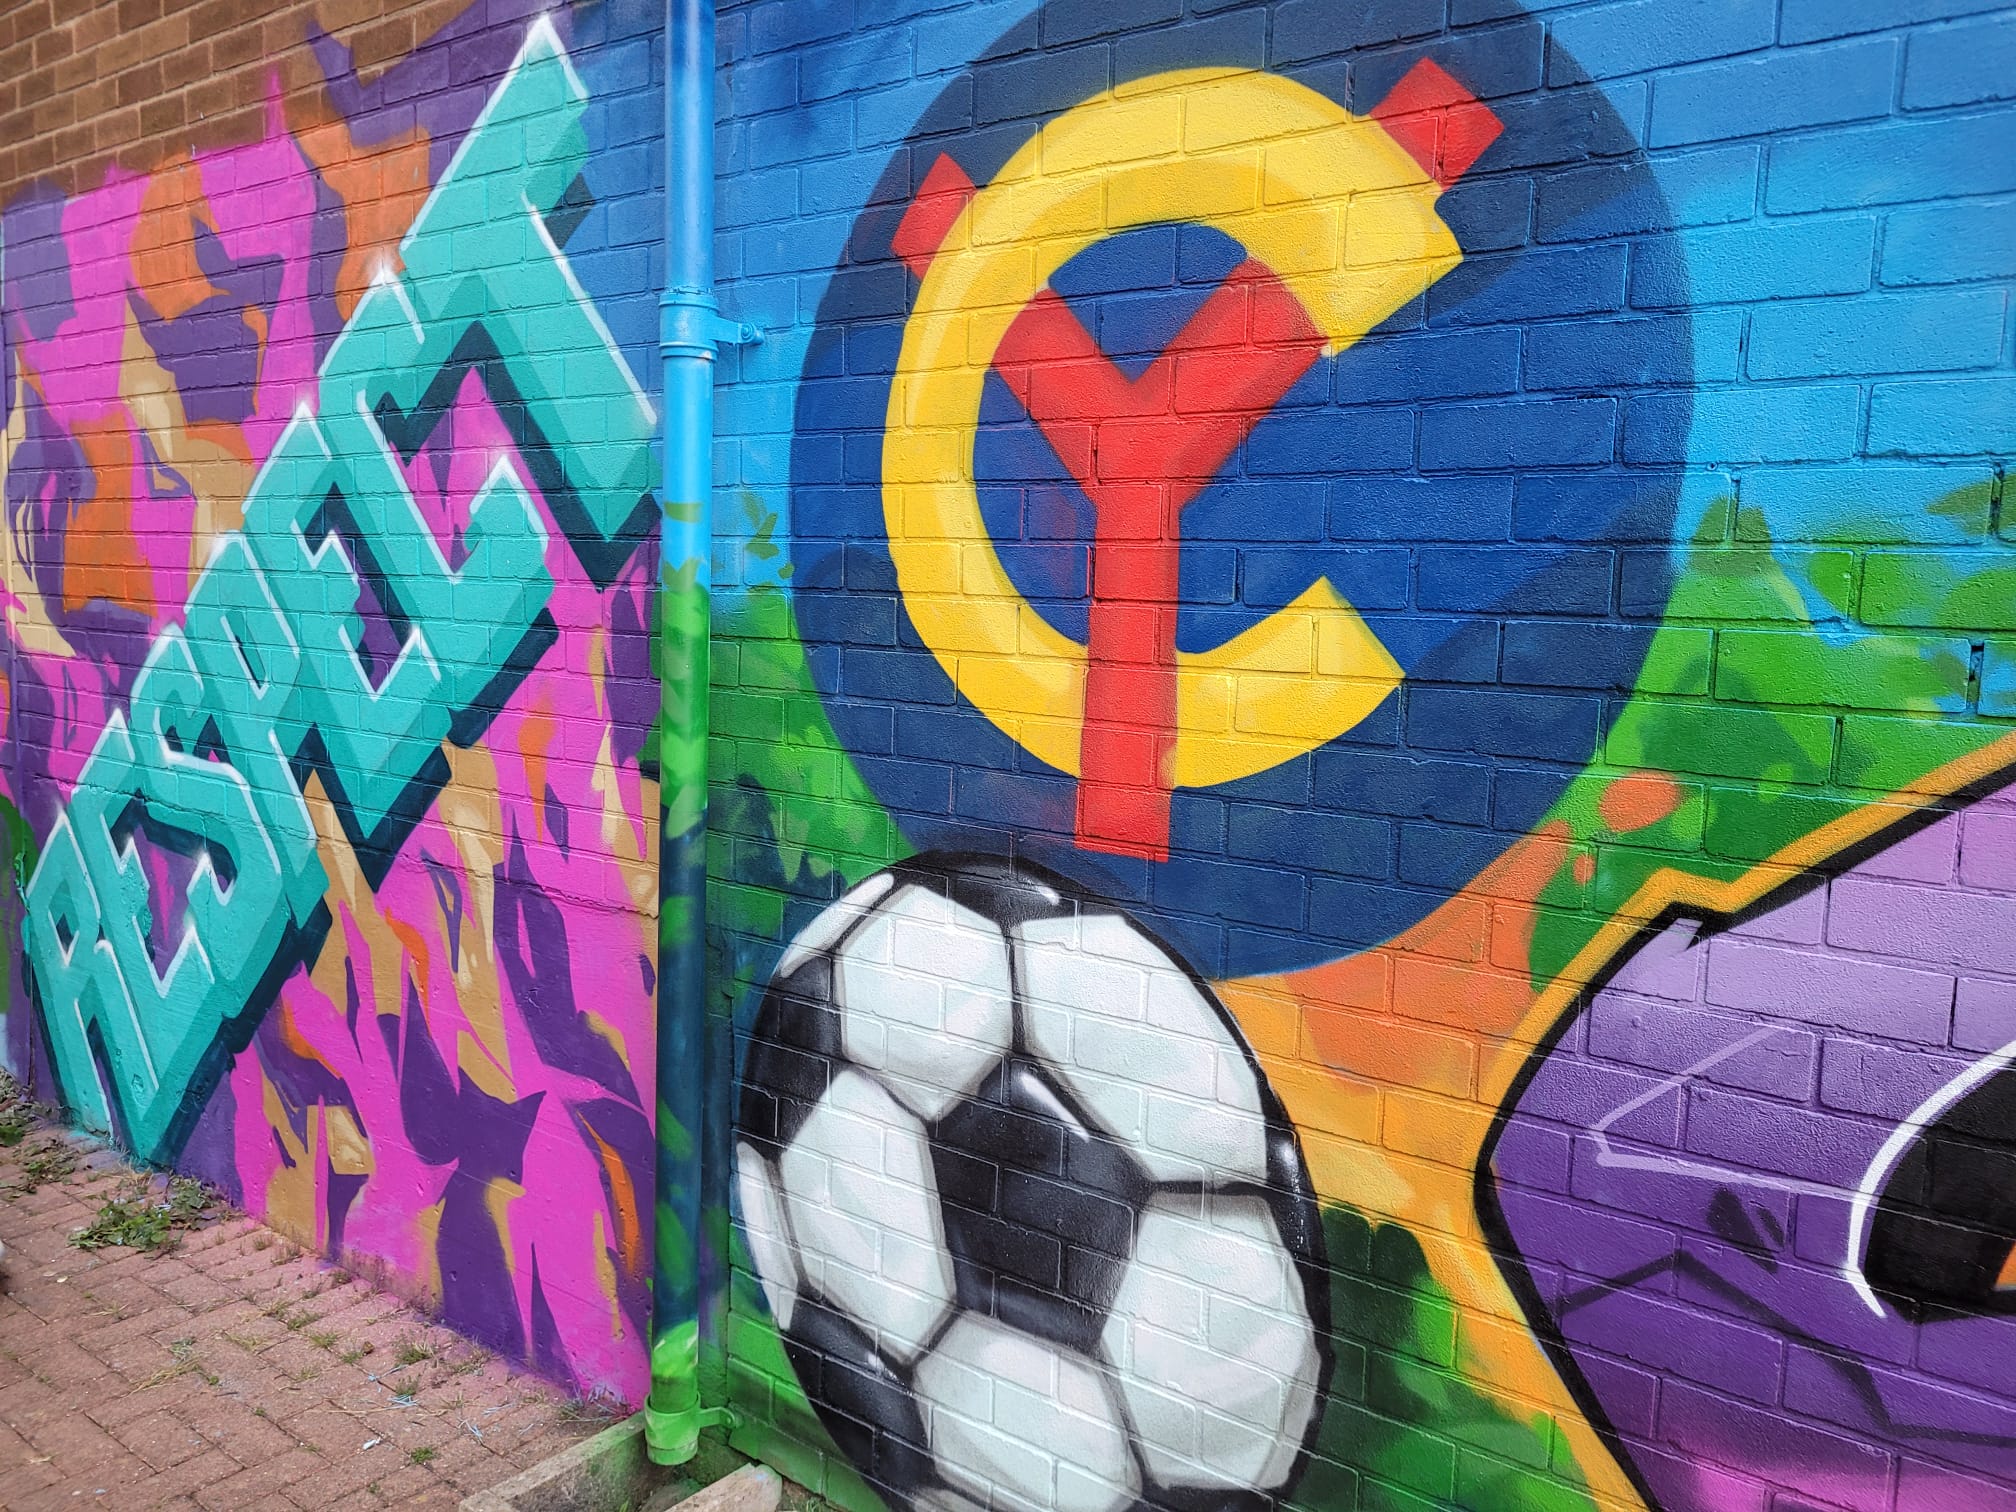 Ysgol Clywedog Graffiti project